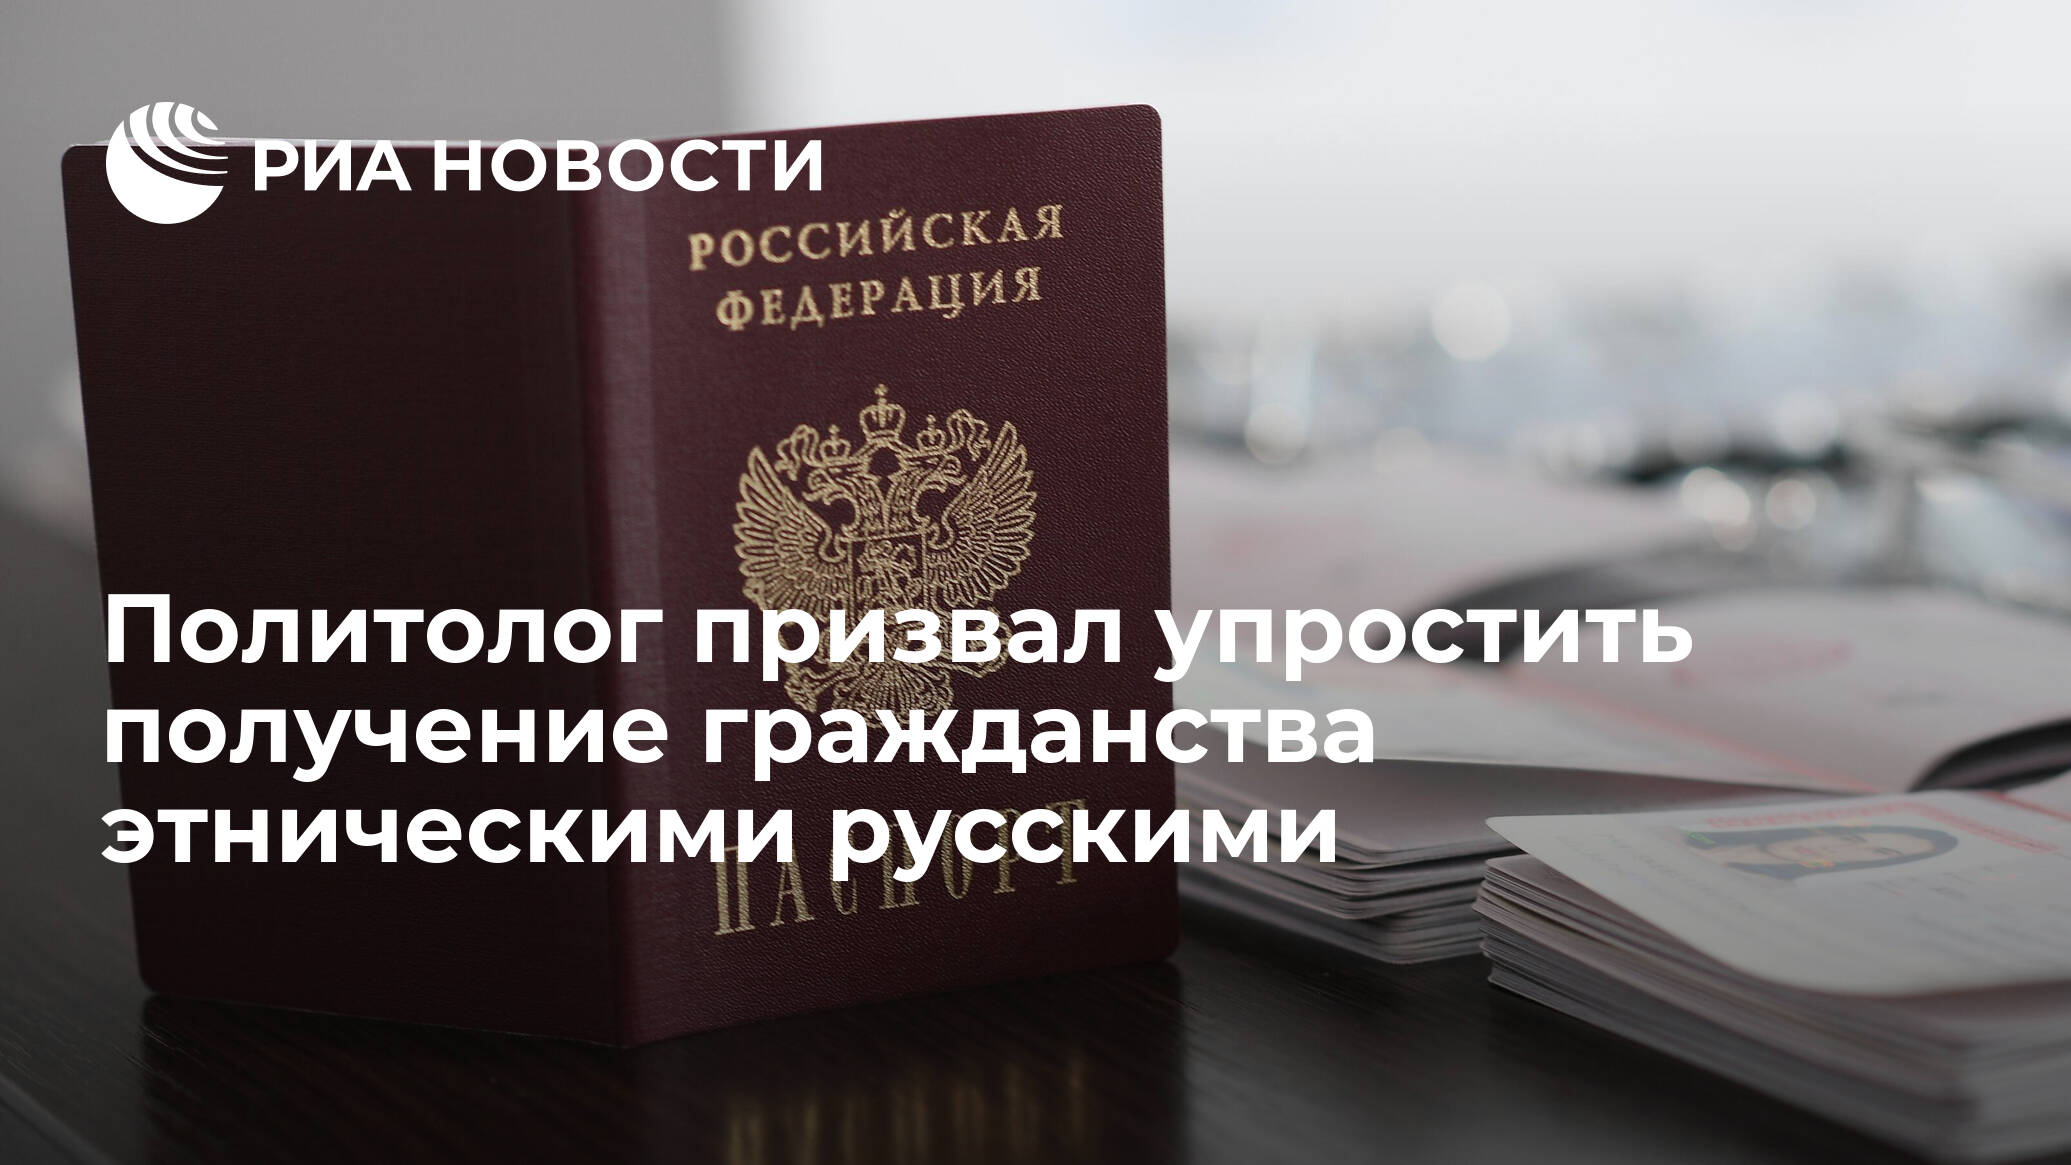 Поездка в казахстан: россиянам нужен только паспорт, больше 30 дней — регистрация